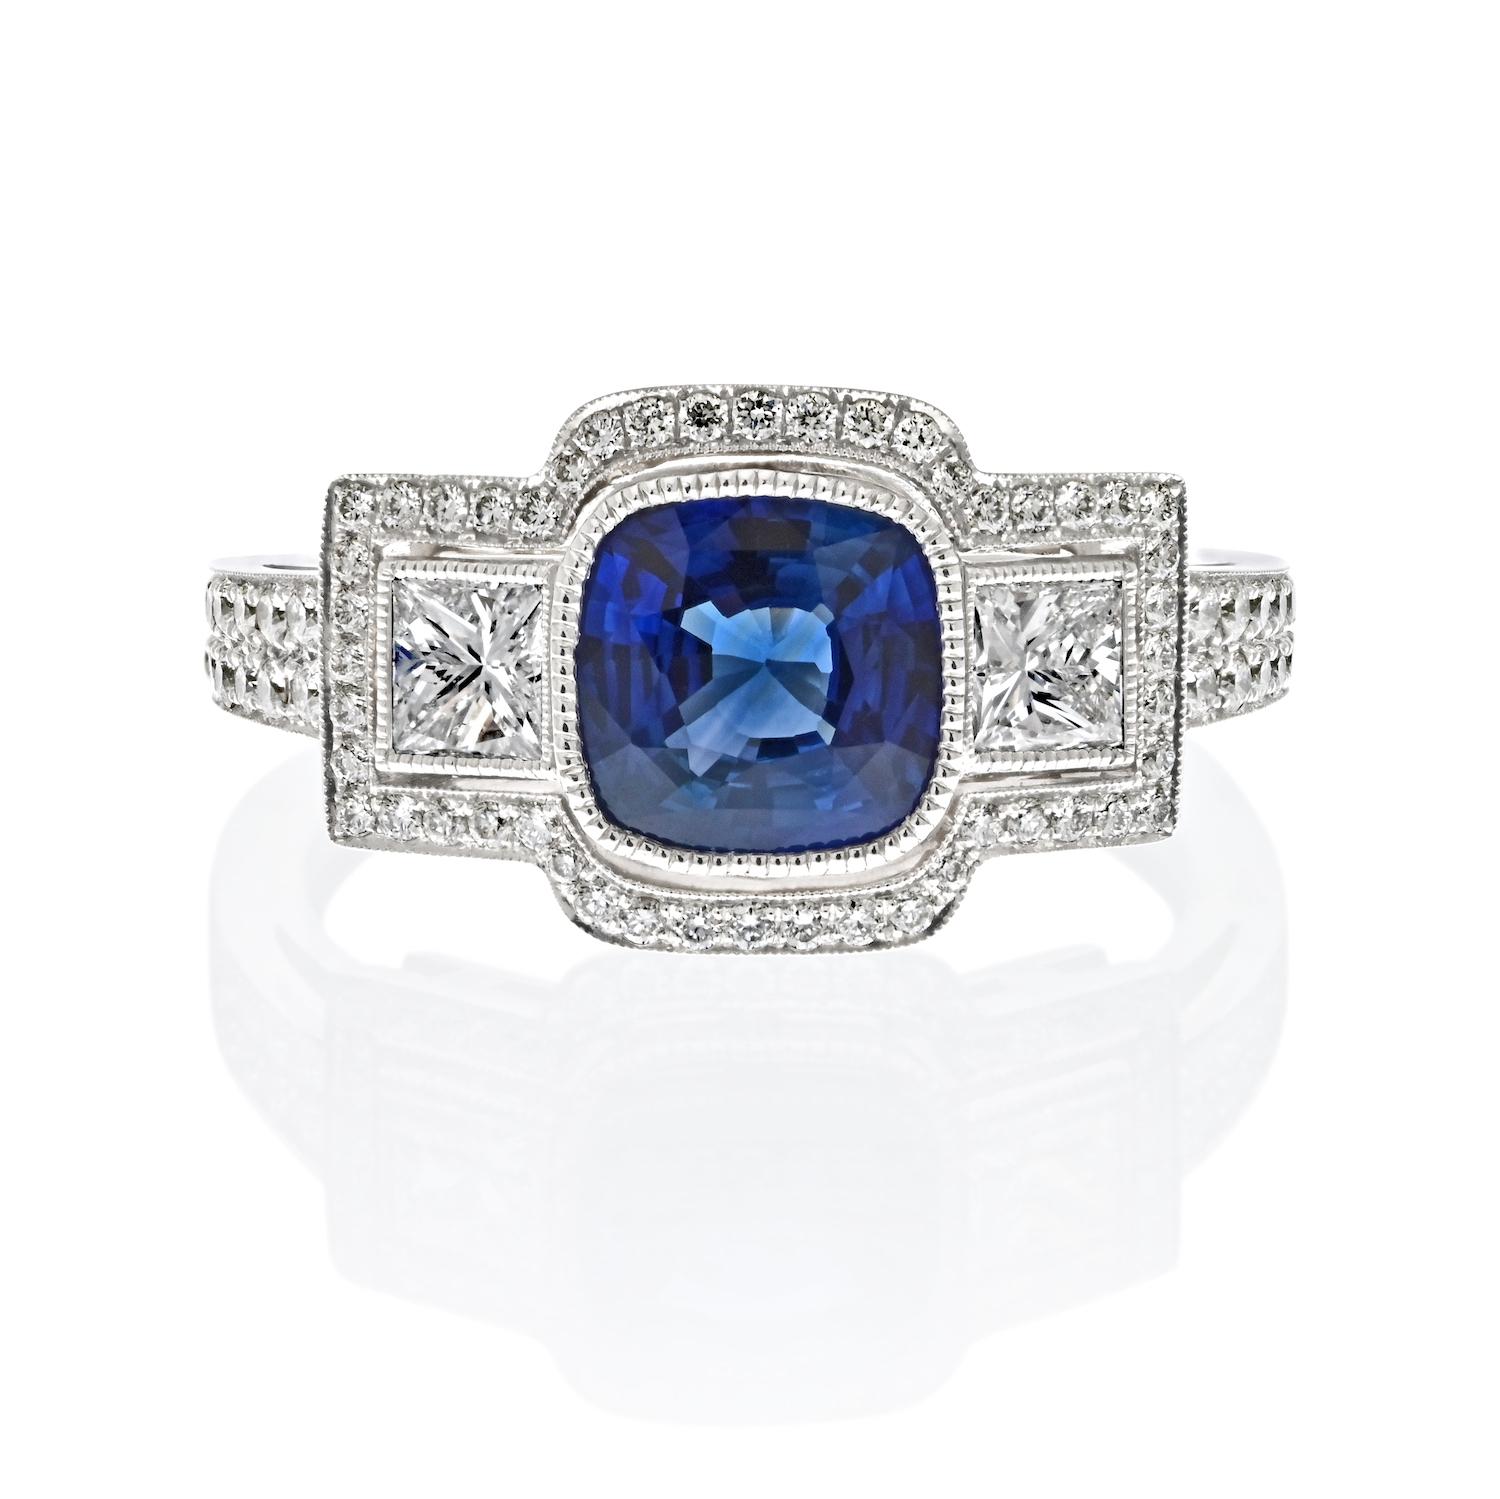 Eleganz in allen Facetten: Der Ring mit blauem Saphir und Diamant.

Dieser exquisite Ring ist ein faszinierendes Meisterwerk, bei dem die Leuchtkraft kostbarer Edelsteine auf die Brillanz außergewöhnlicher Handwerkskunst trifft.

**Der Star der